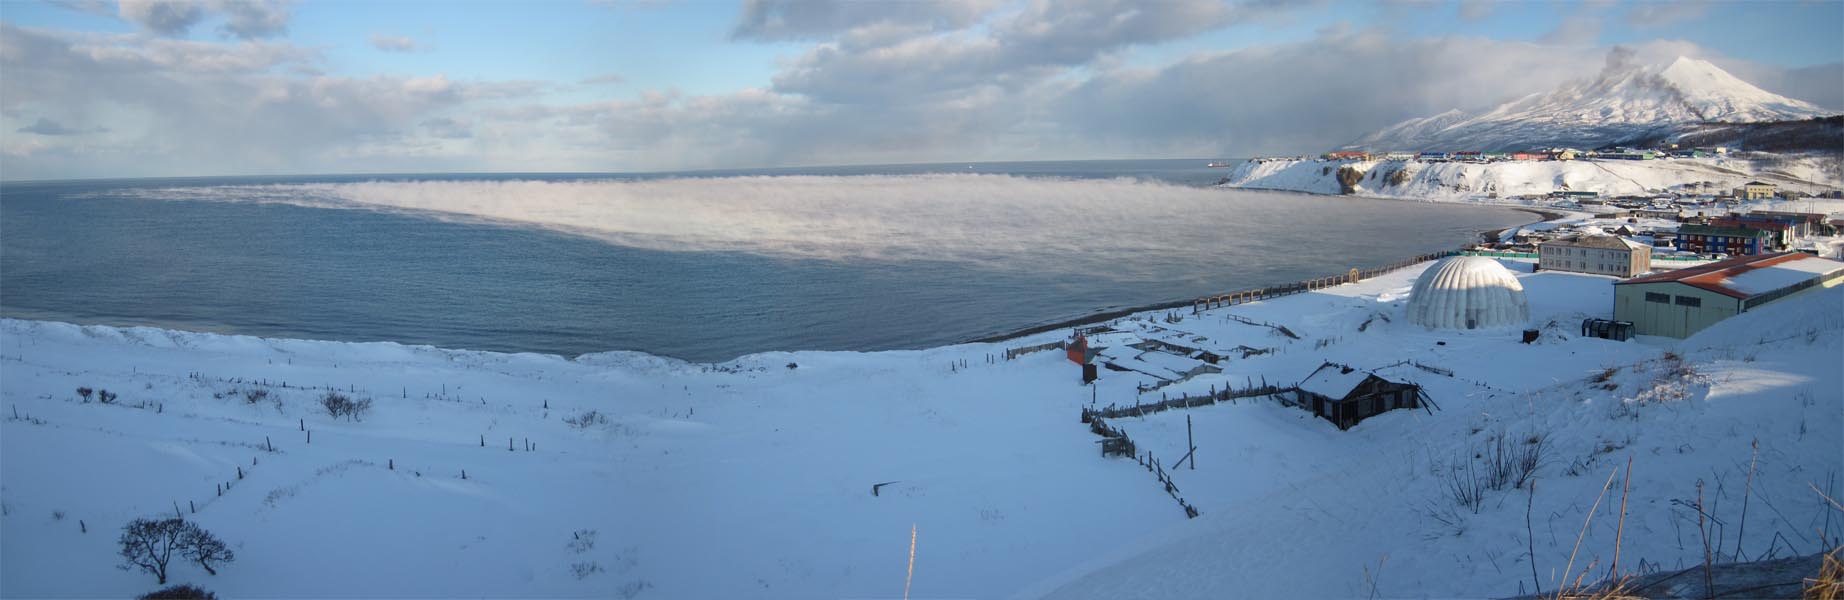 _Панорамка морозного залива.jpg